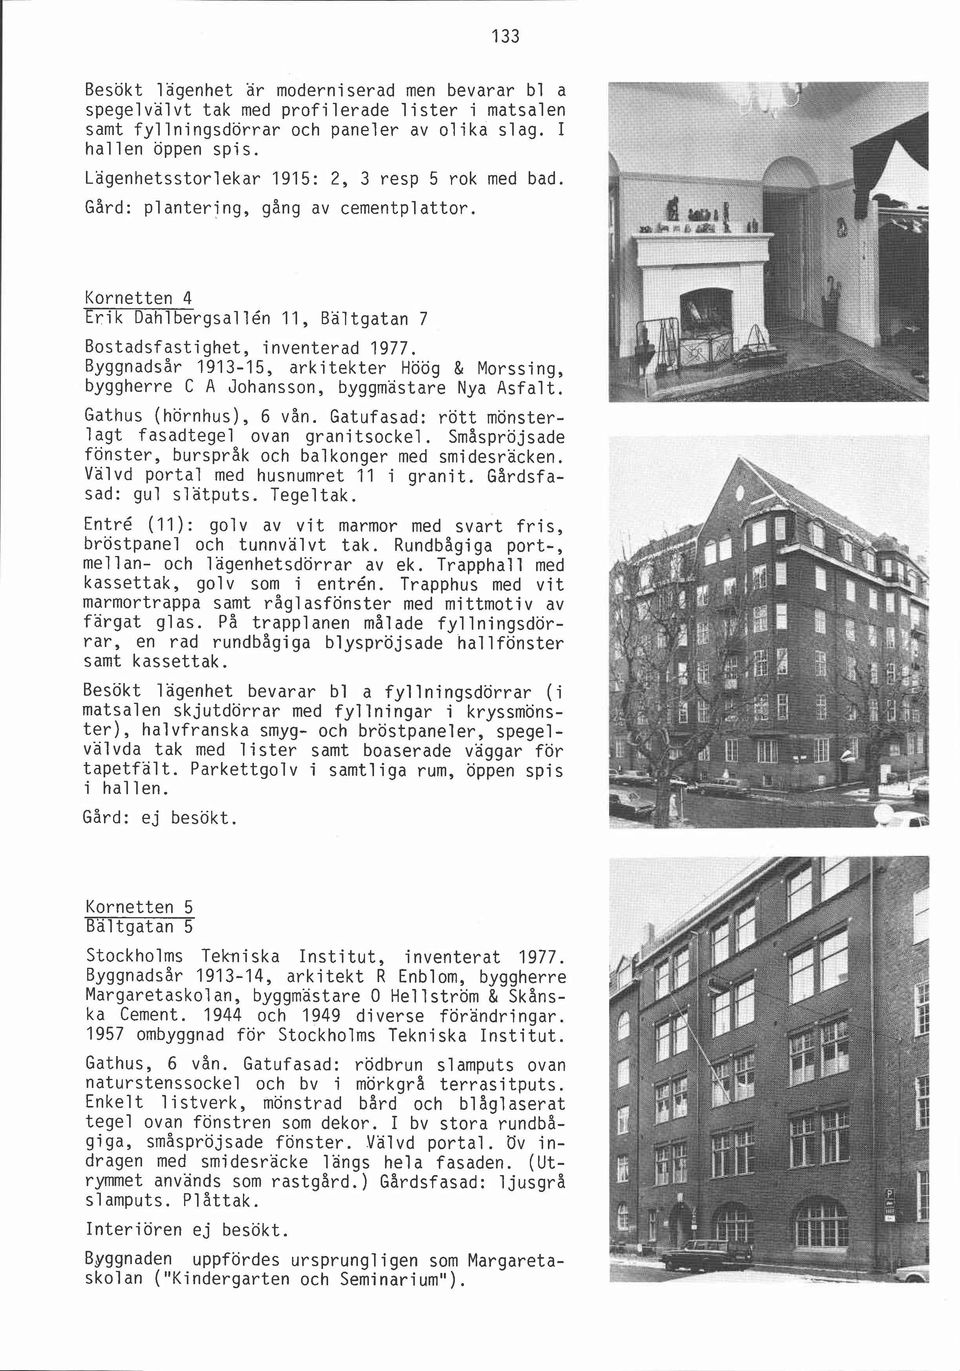 Kornetten 4 Erik Dahlbergsallén 11, Bältgatan 7 Byggnadsår 1913-15, arkitekter Höög & Morssing, byggherre C A Johansson, byggmästare Nya Asfalt. Gathus (hörnhus), 6 vån.